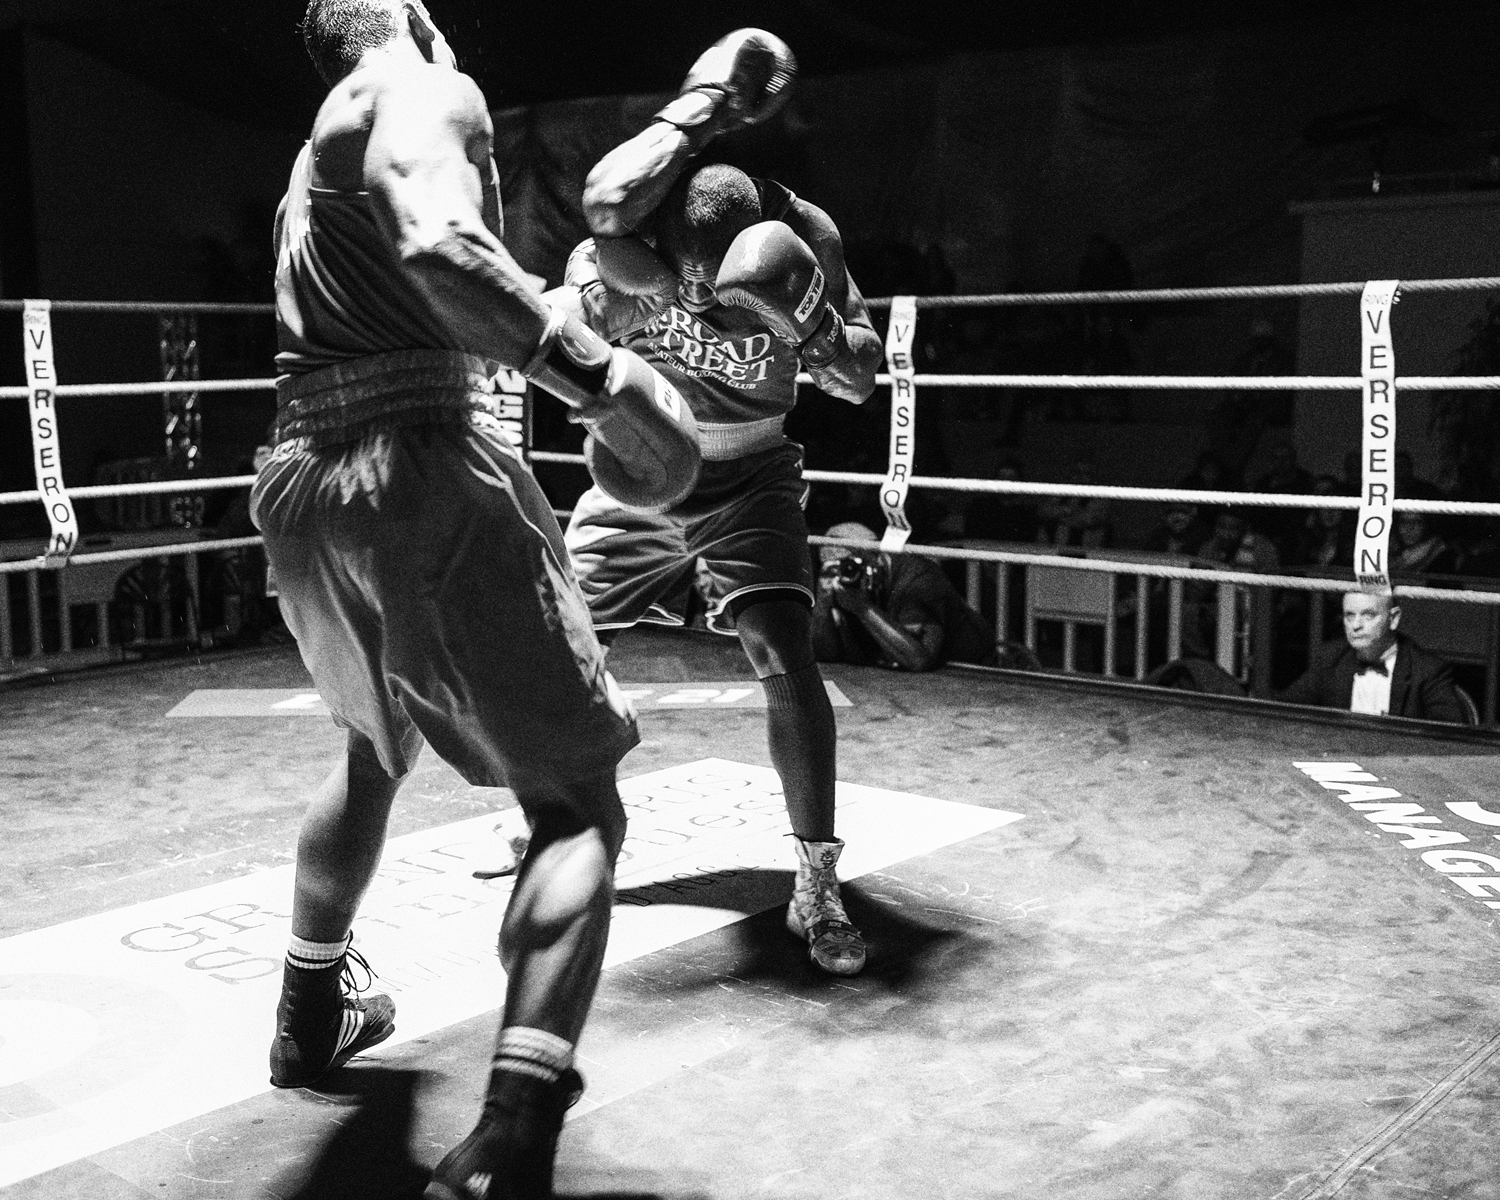 Championat de Boxe 1/2Finale, J.L.Mosquea - S.Lele, 81 kg, Aulnay-sous-Bois, France